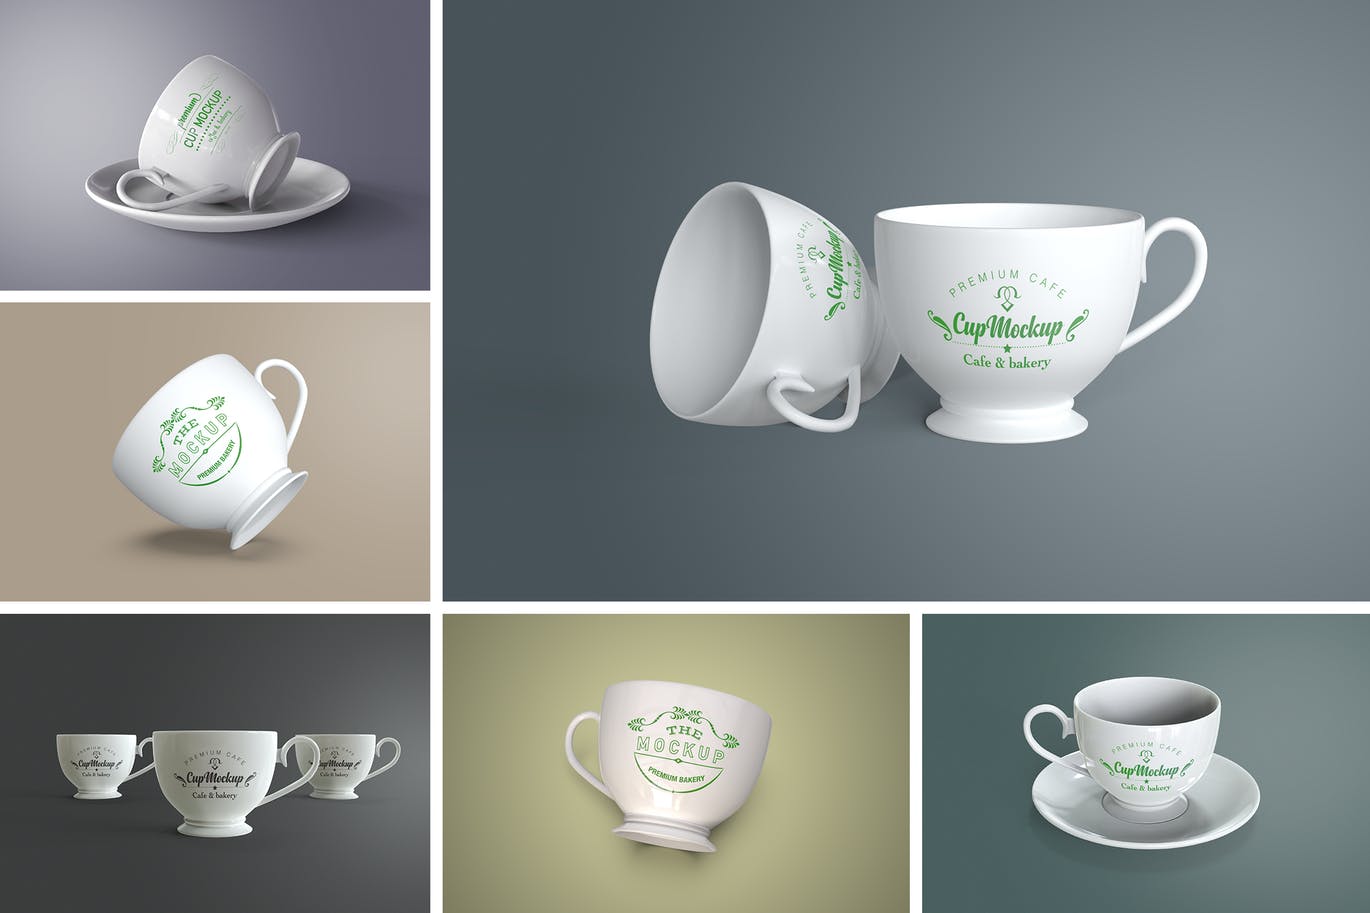 陶瓷茶杯咖啡杯外观设计样机模板v2 Cup Mockup 2.0插图